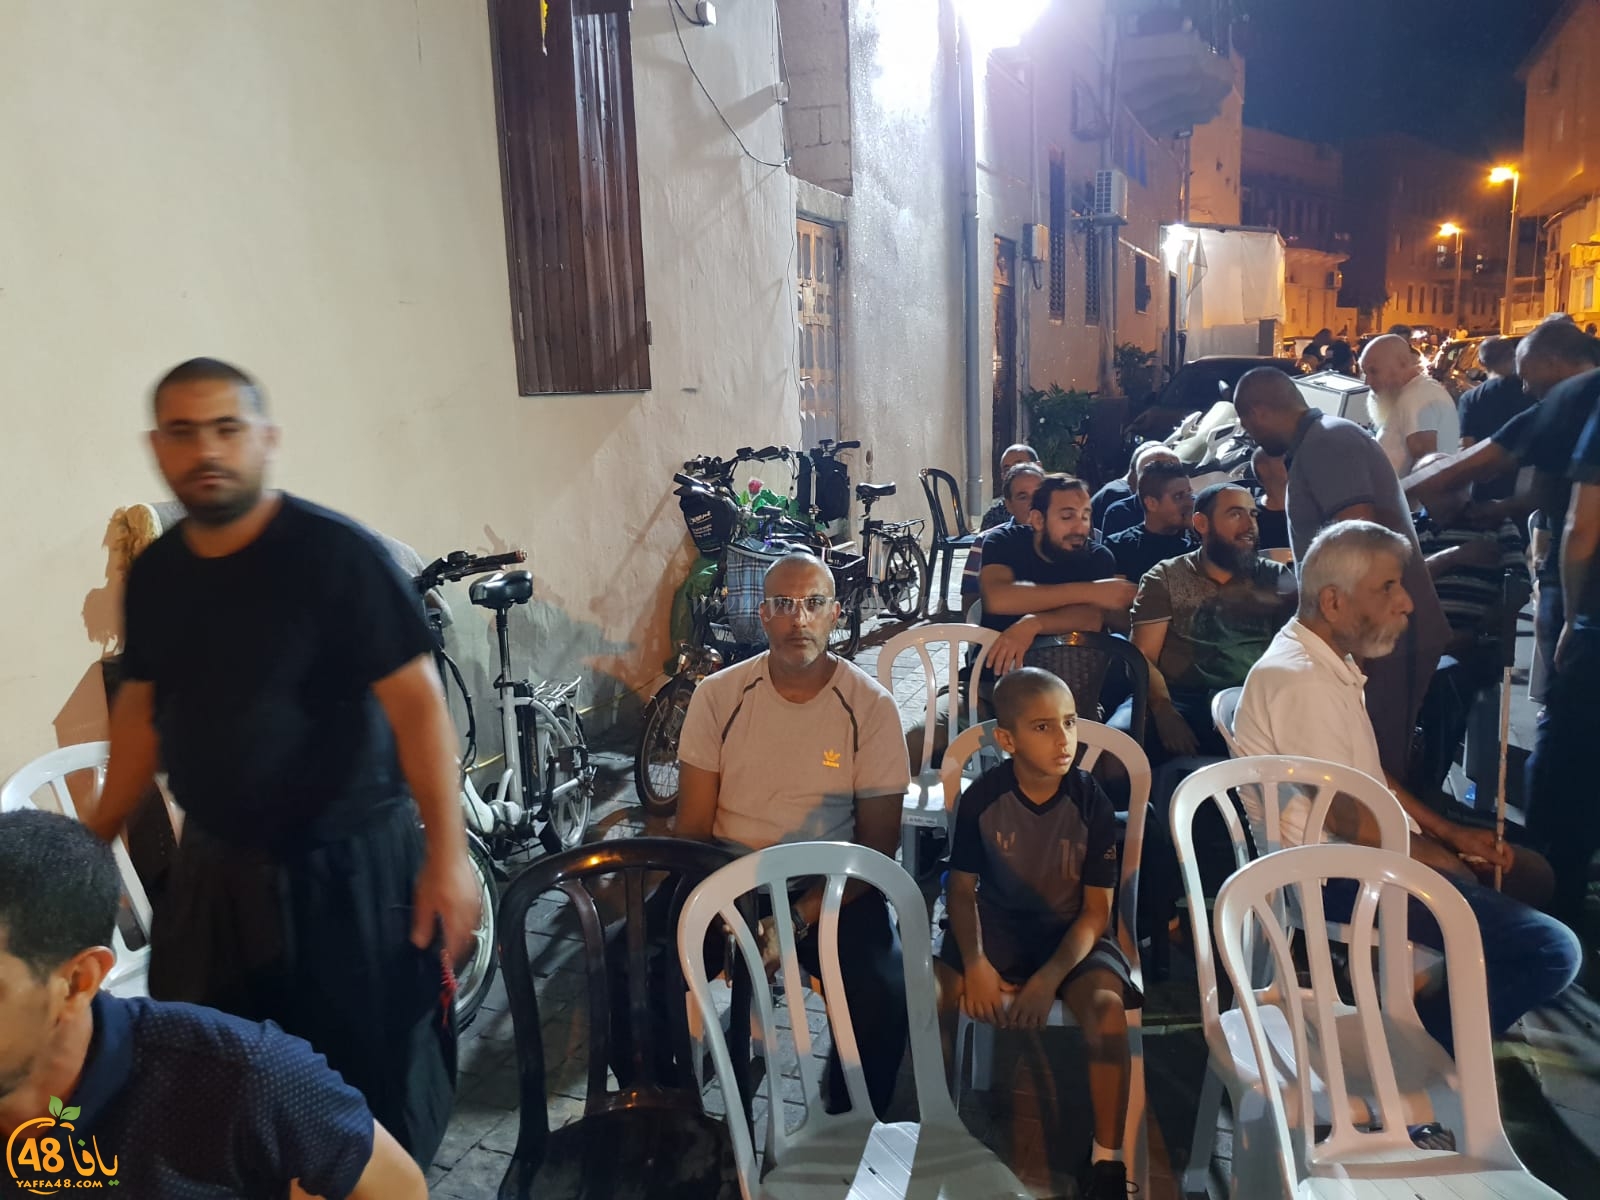  بالصور: وفود تُقدّم واجب العزاء لعائلة شقرة بمدينة يافا 